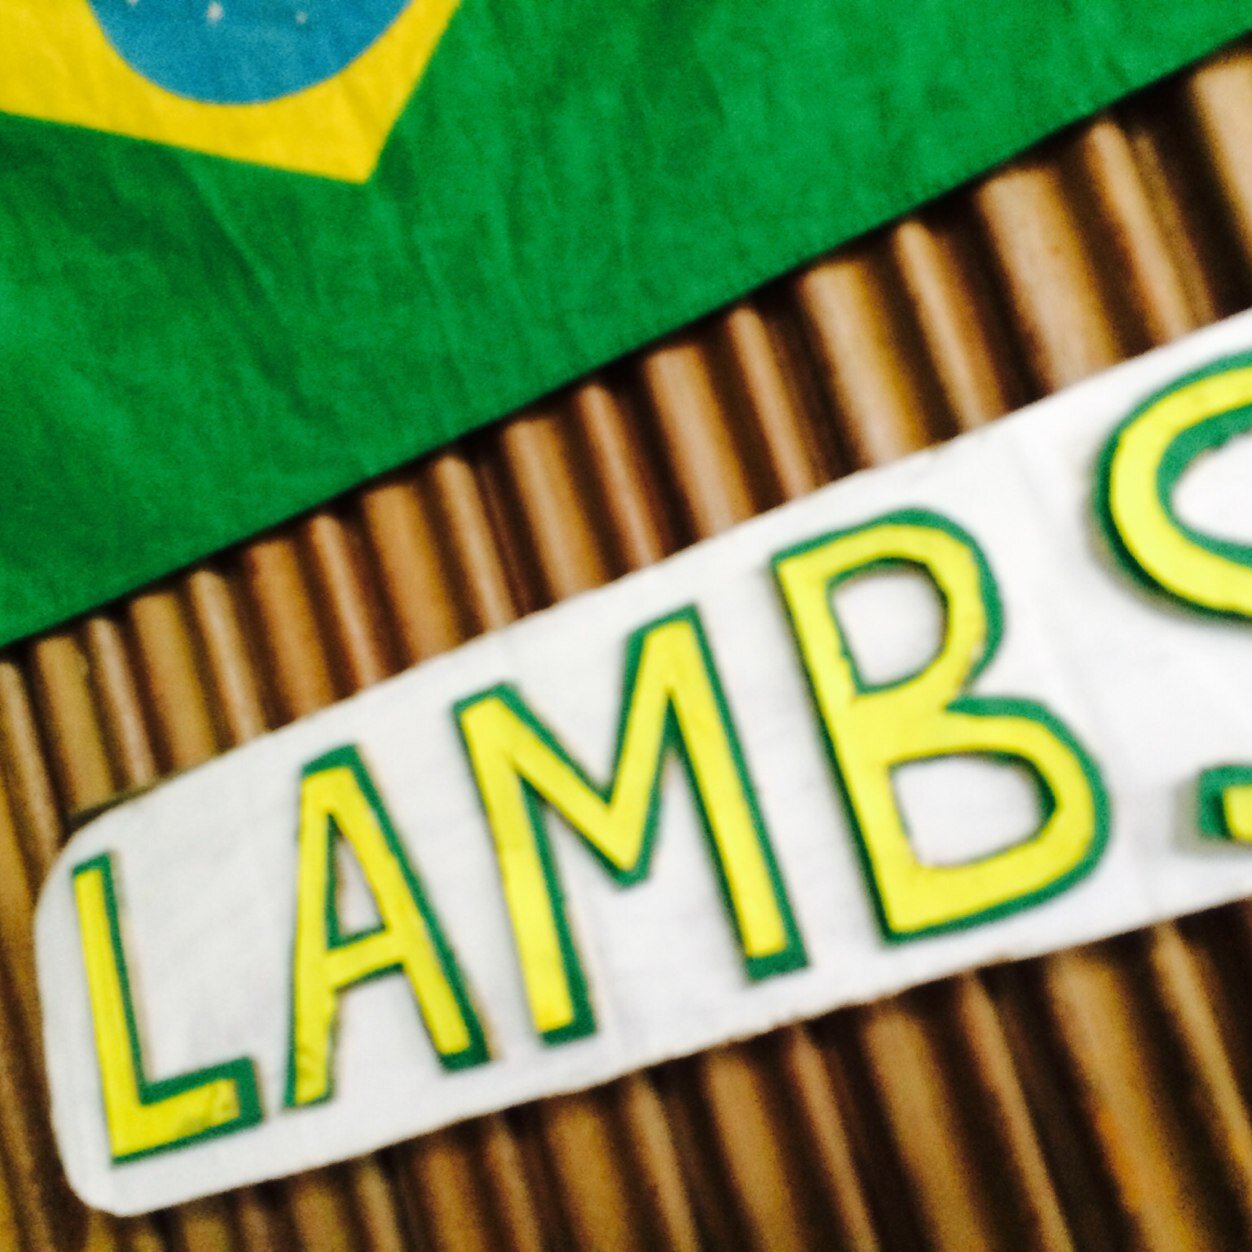 Lambs浅草サンバカーニバル14 Lambs Asakusa Twitter